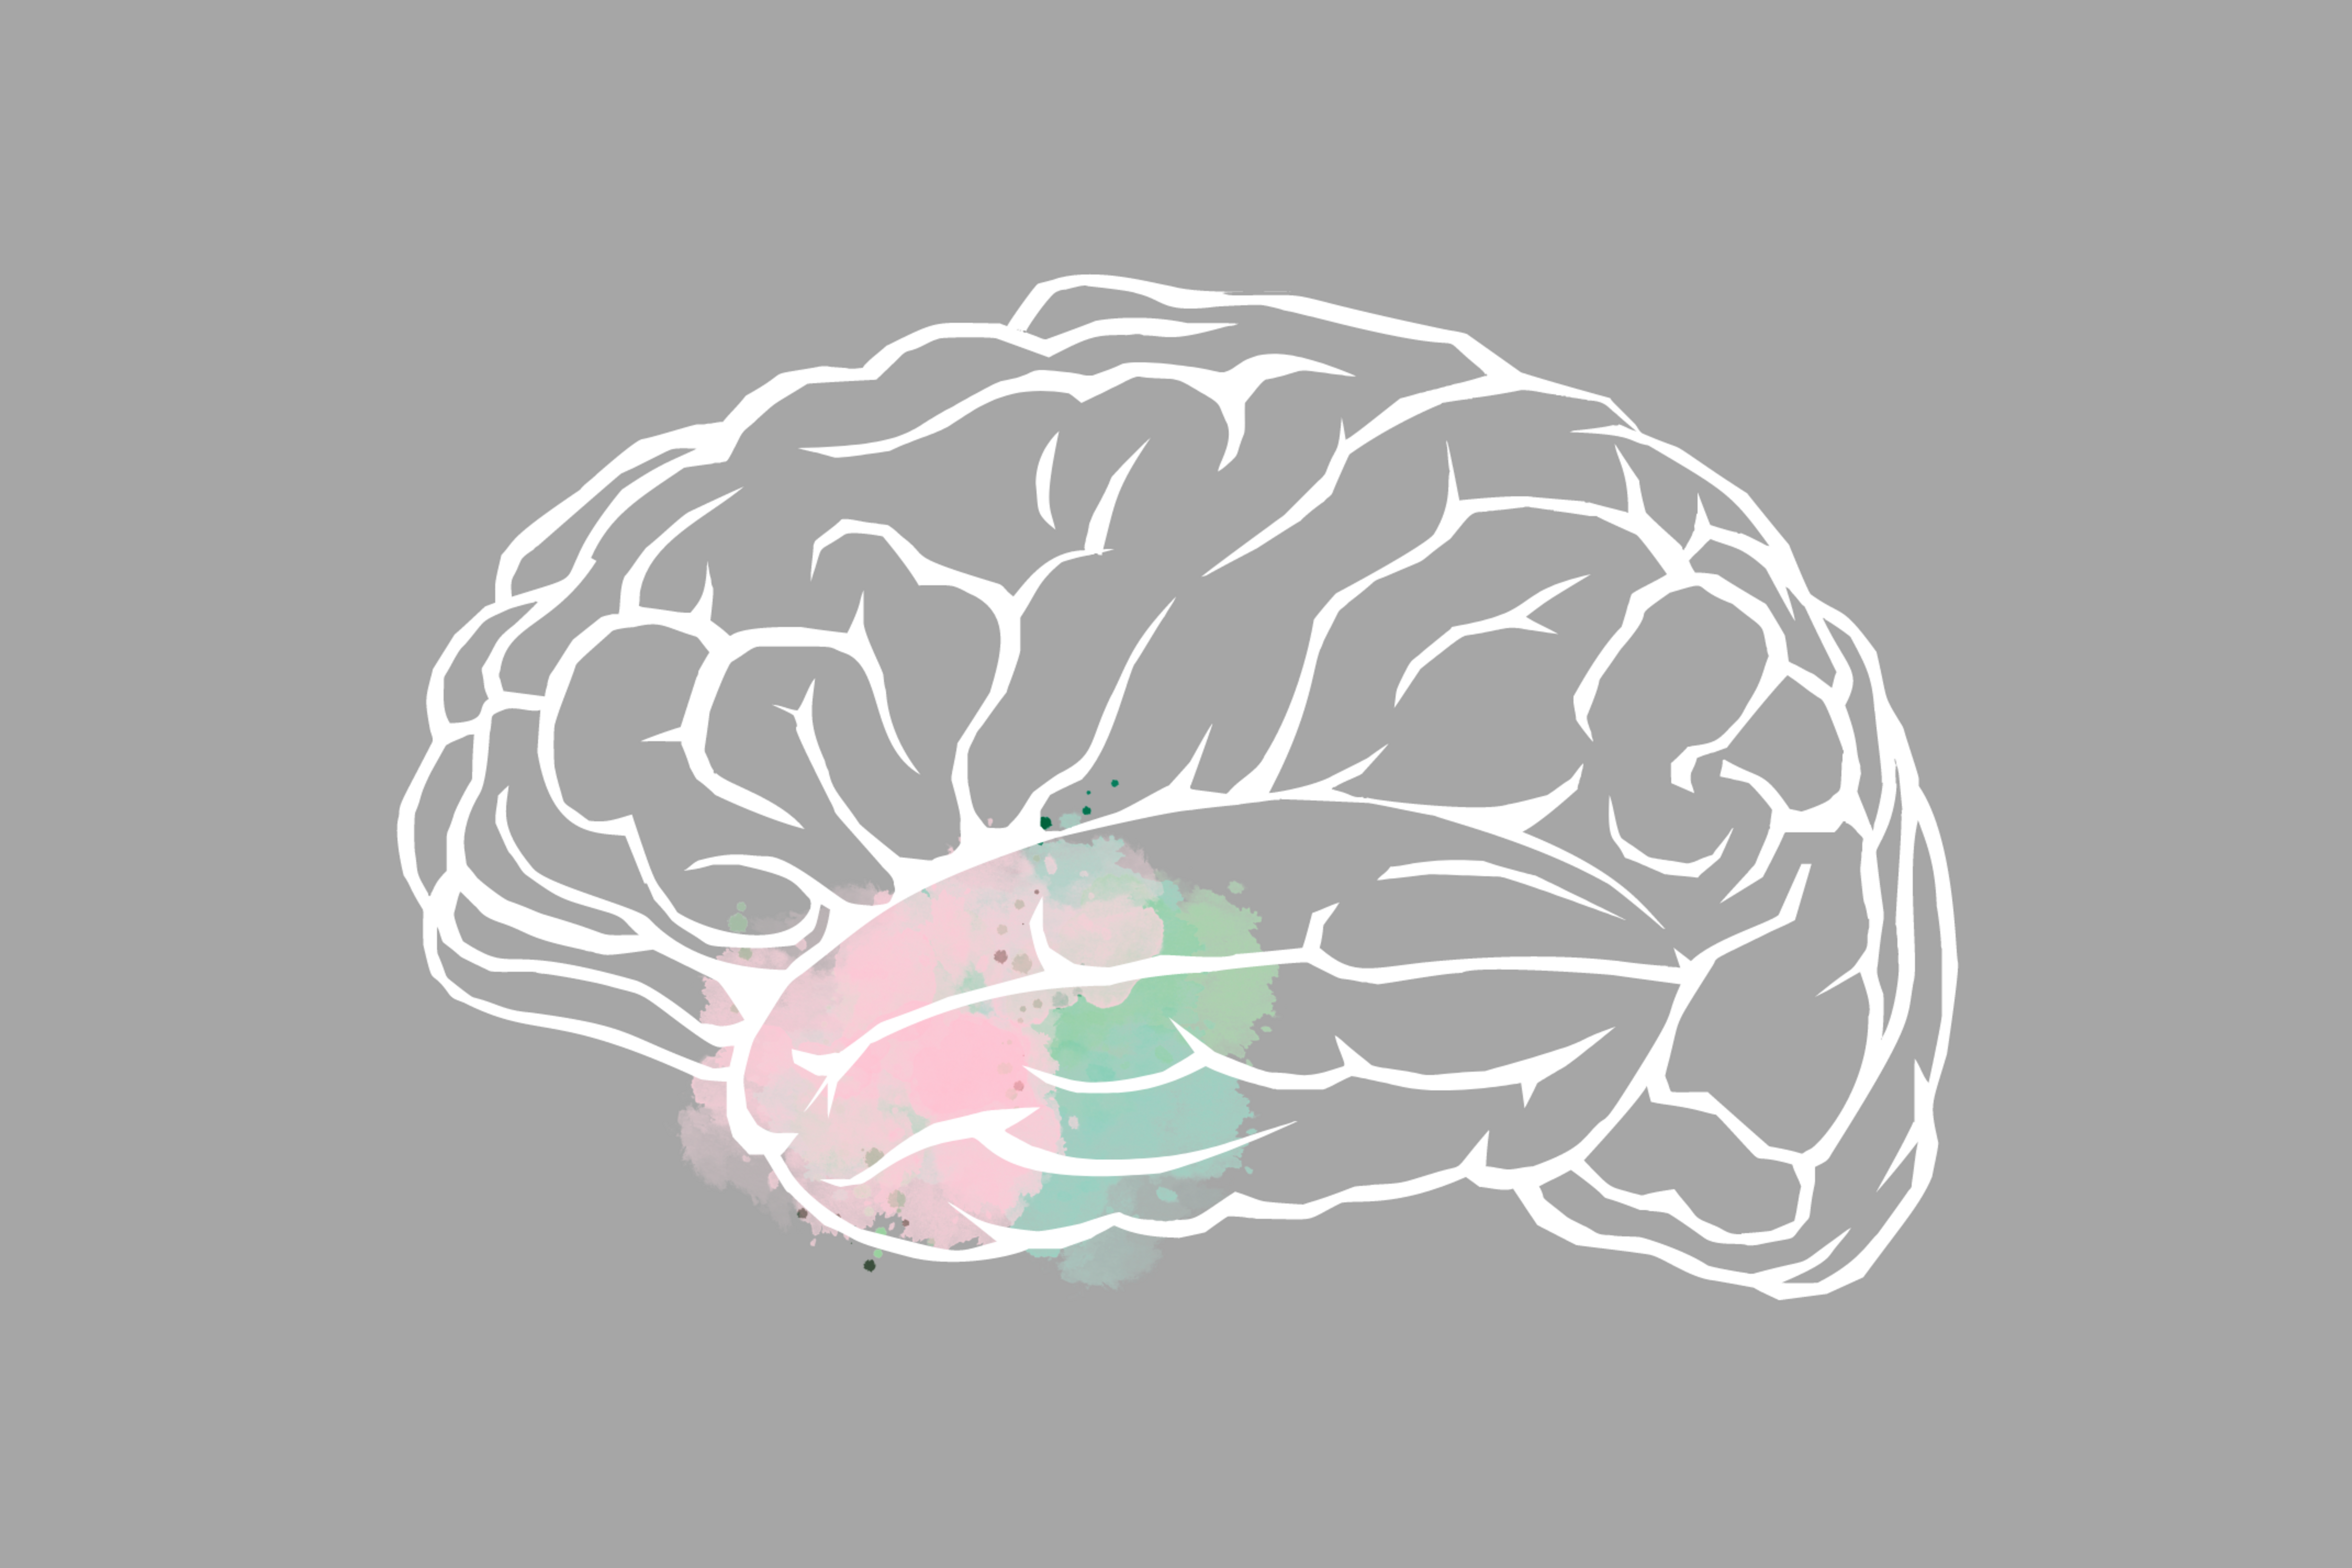 [Translate to Englisch:] Bild eines Gehirns mit eingefärbter Amygdala